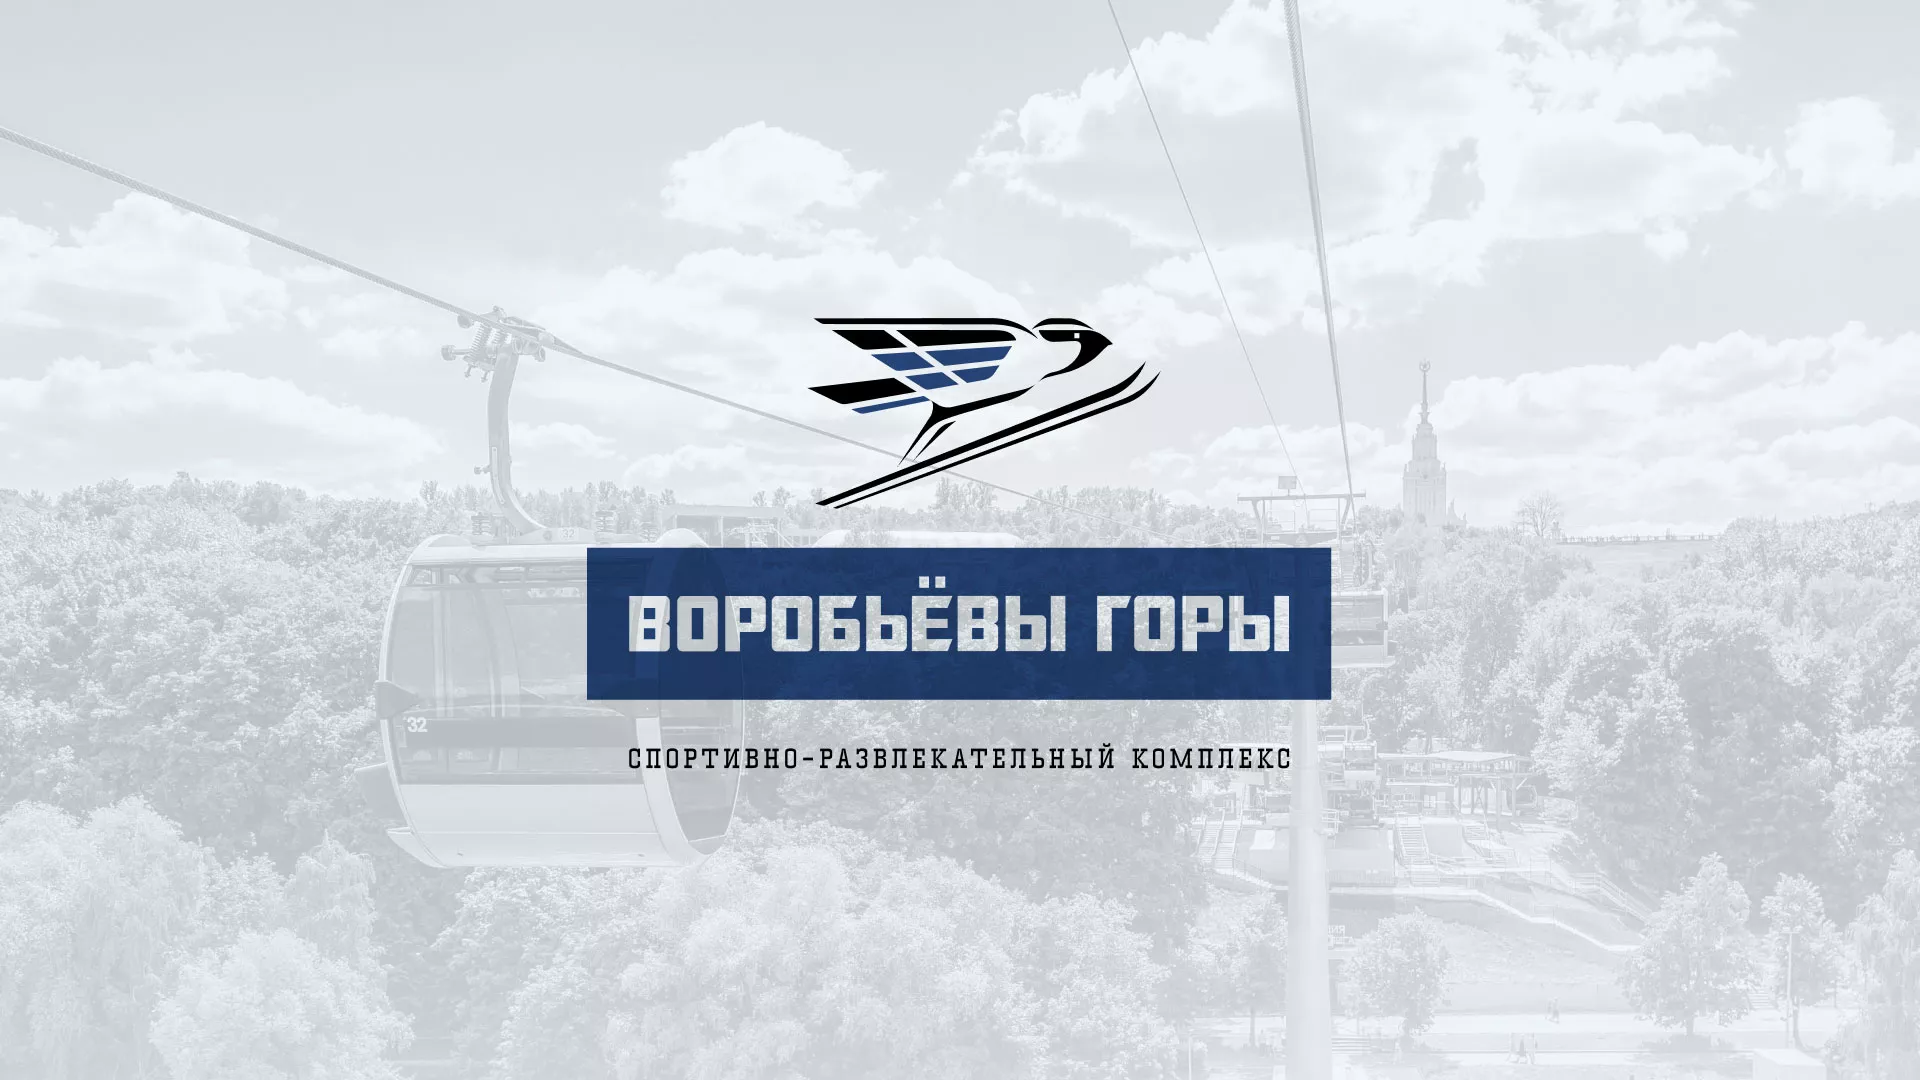 Разработка сайта в Уварово для спортивно-развлекательного комплекса «Воробьёвы горы»